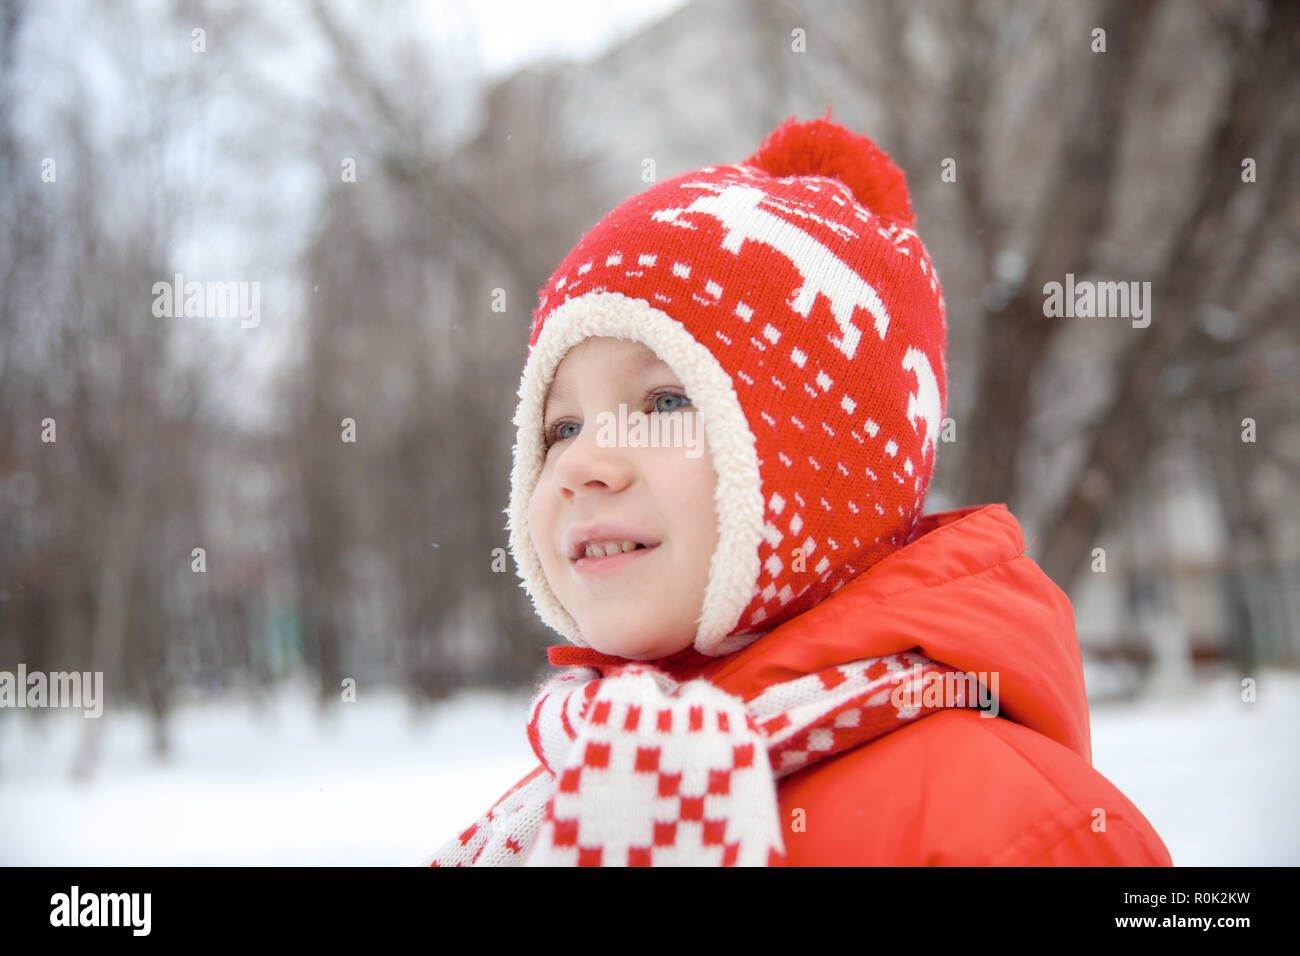 Portrait d'hiver de kid boy dans des vêtements colorés Banque D'Images